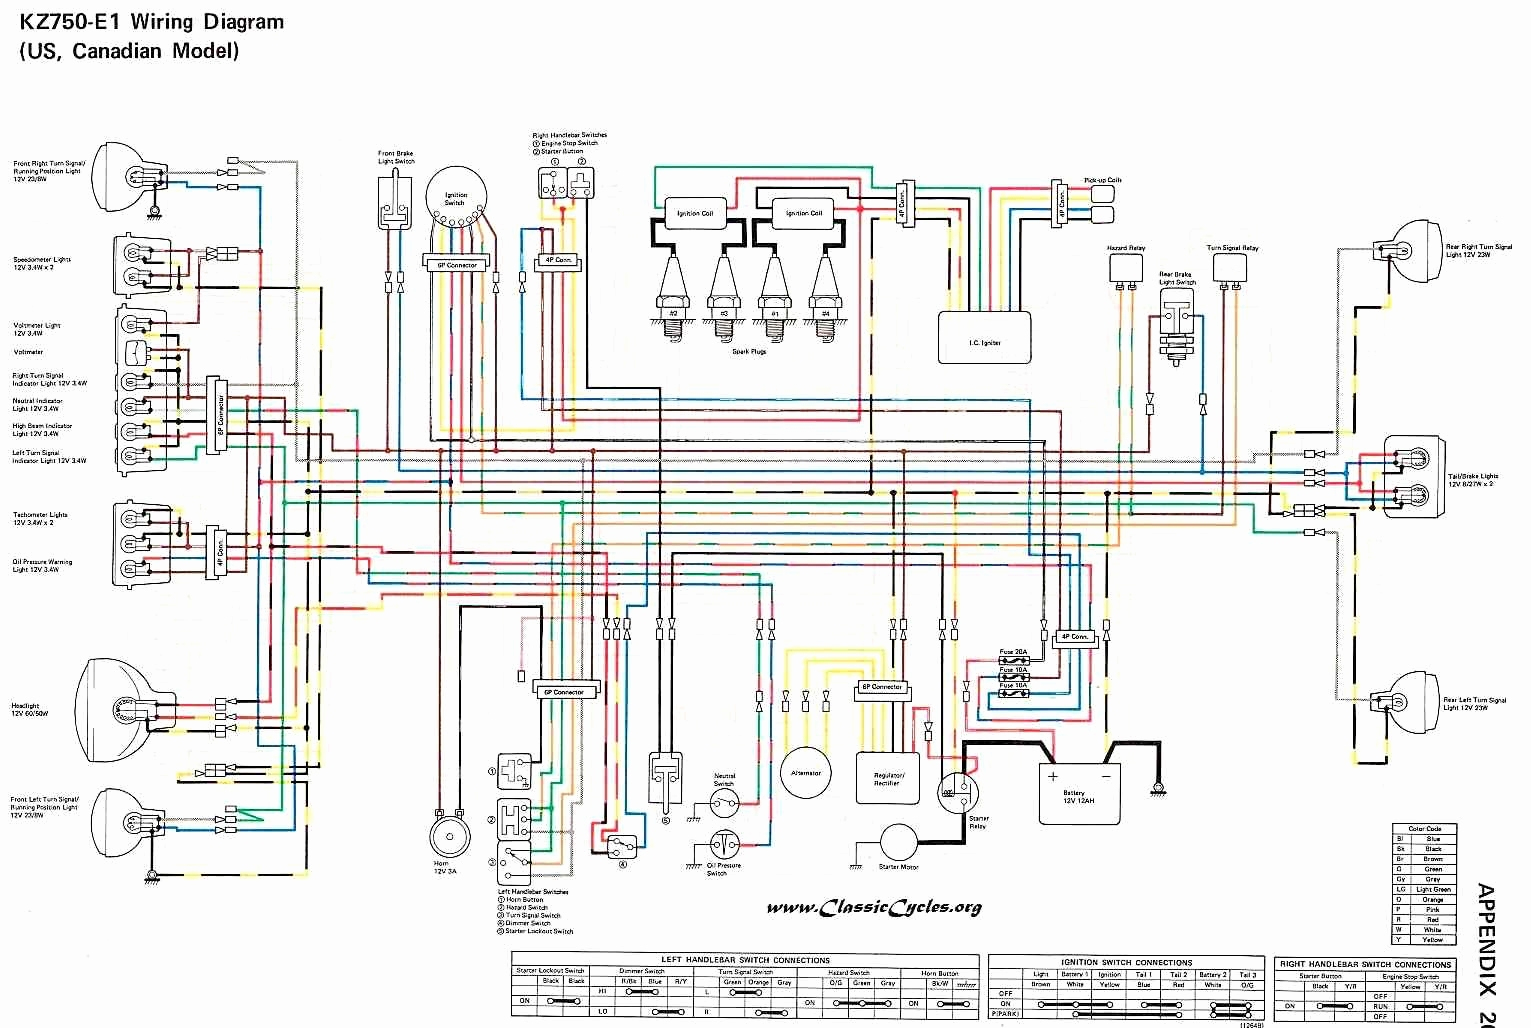 Harley Davidson Voltage Regulator Wiring Diagram | Free Wiring Diagram - 12 Volt Generator Voltage Regulator Wiring Diagram